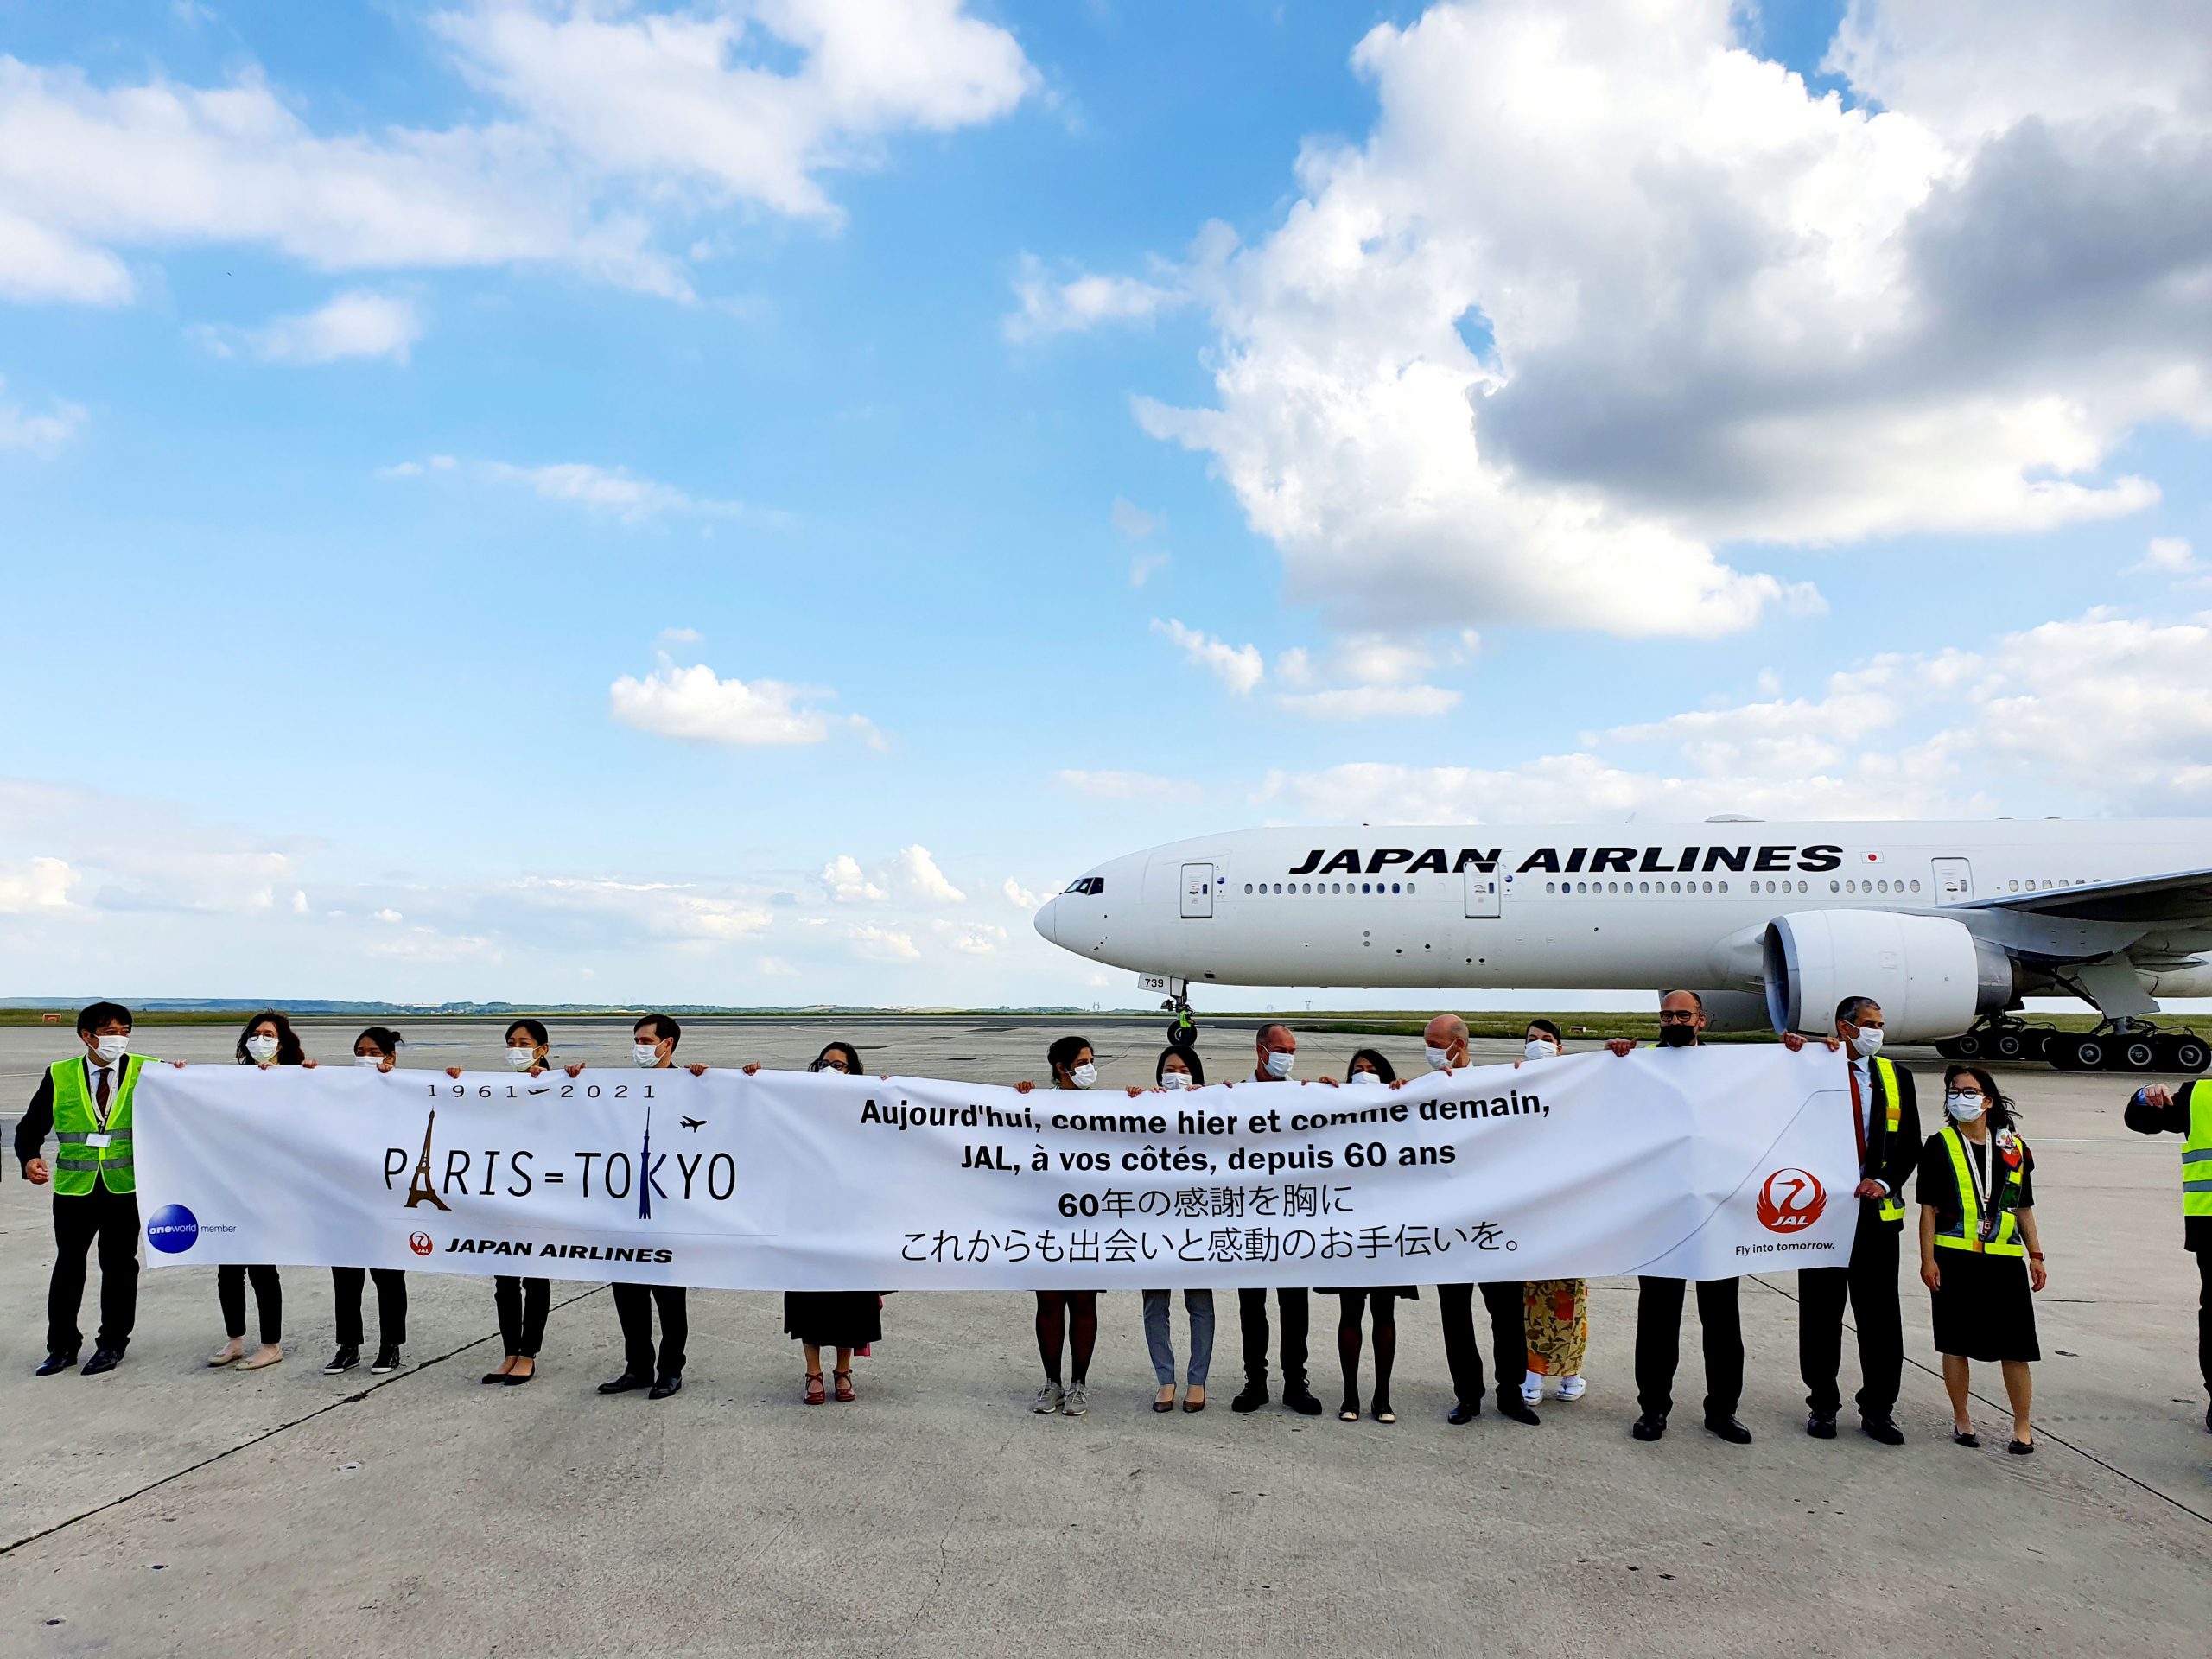 L’Union européenne signe un accord aérien avec le Japon 15 Air Journal